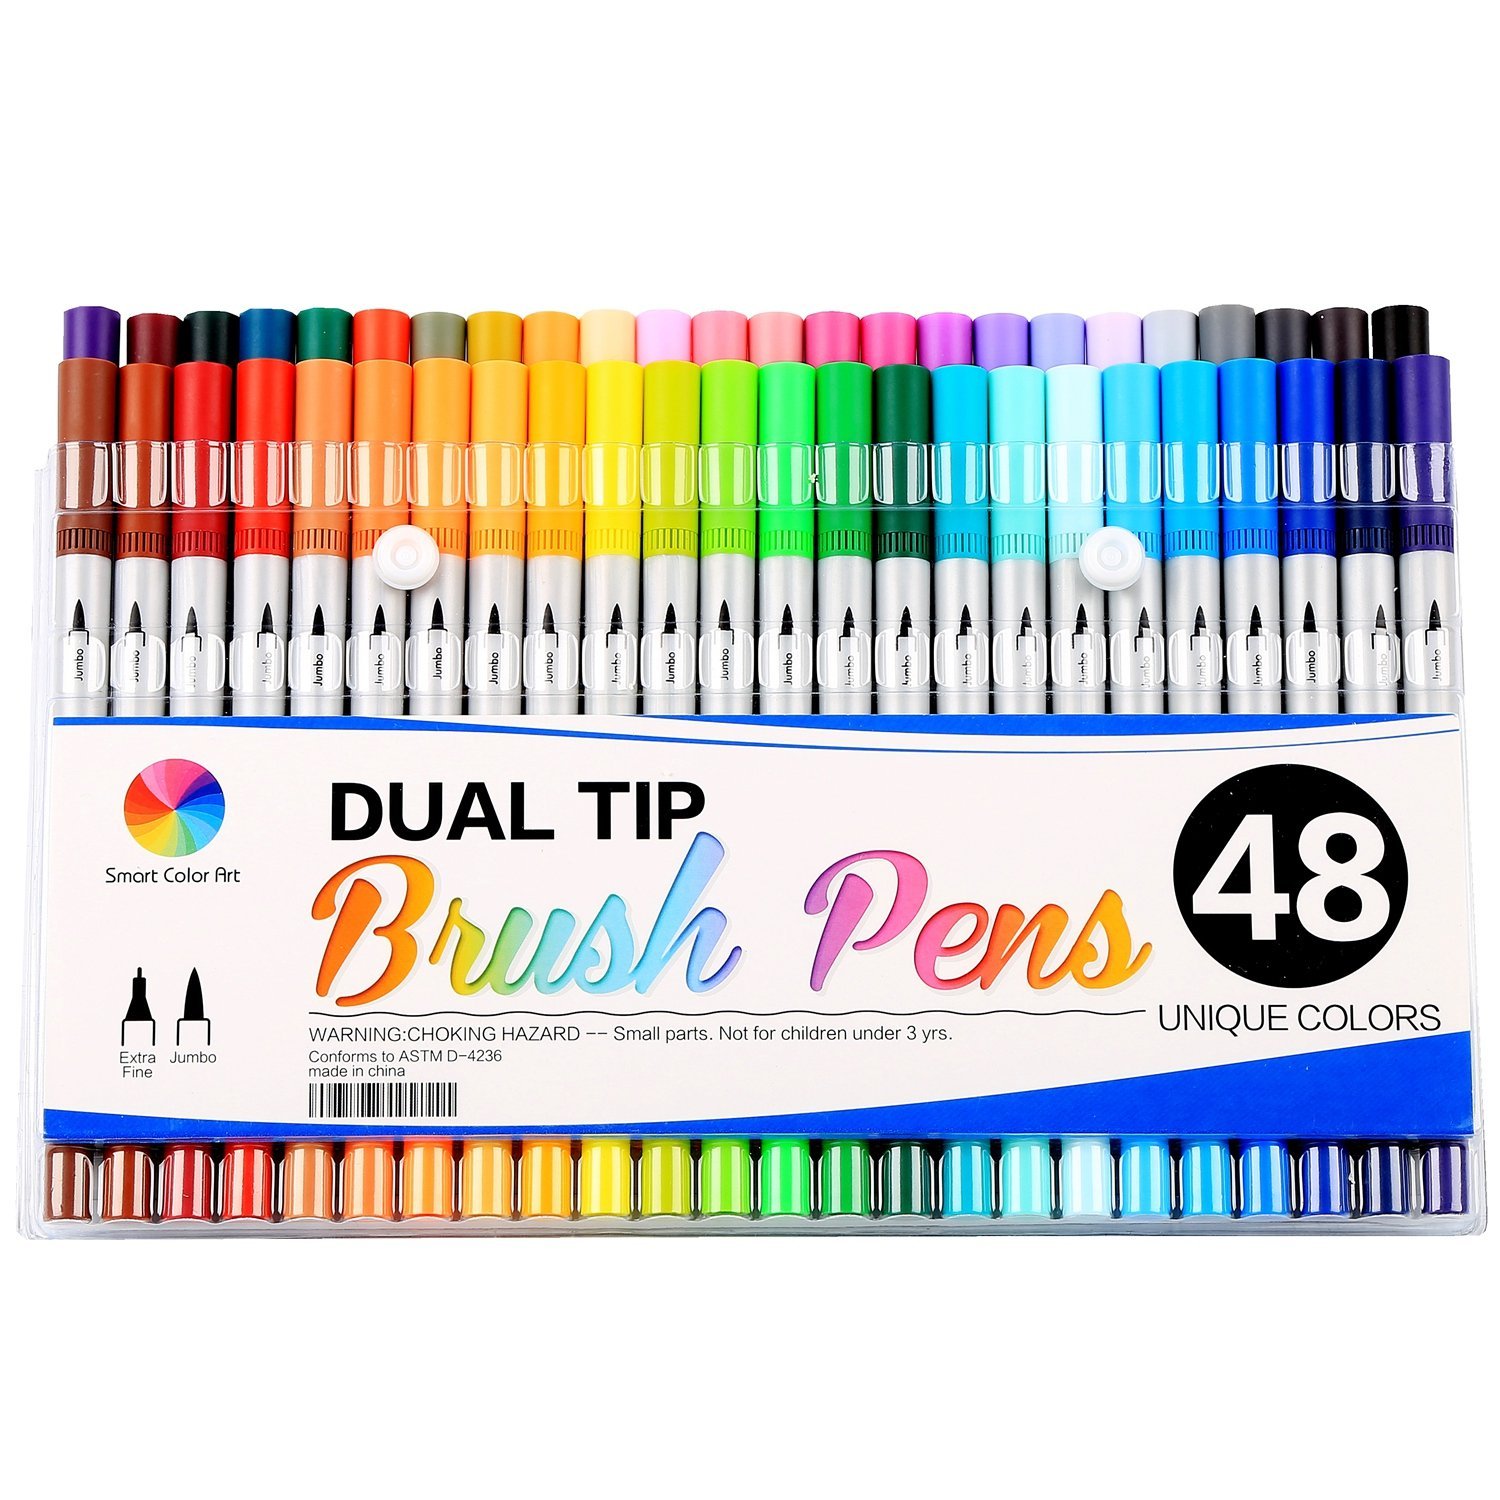 Smart Color Art Dual Tip Brush Pens – 48 Unique Colors – Just $26.65!